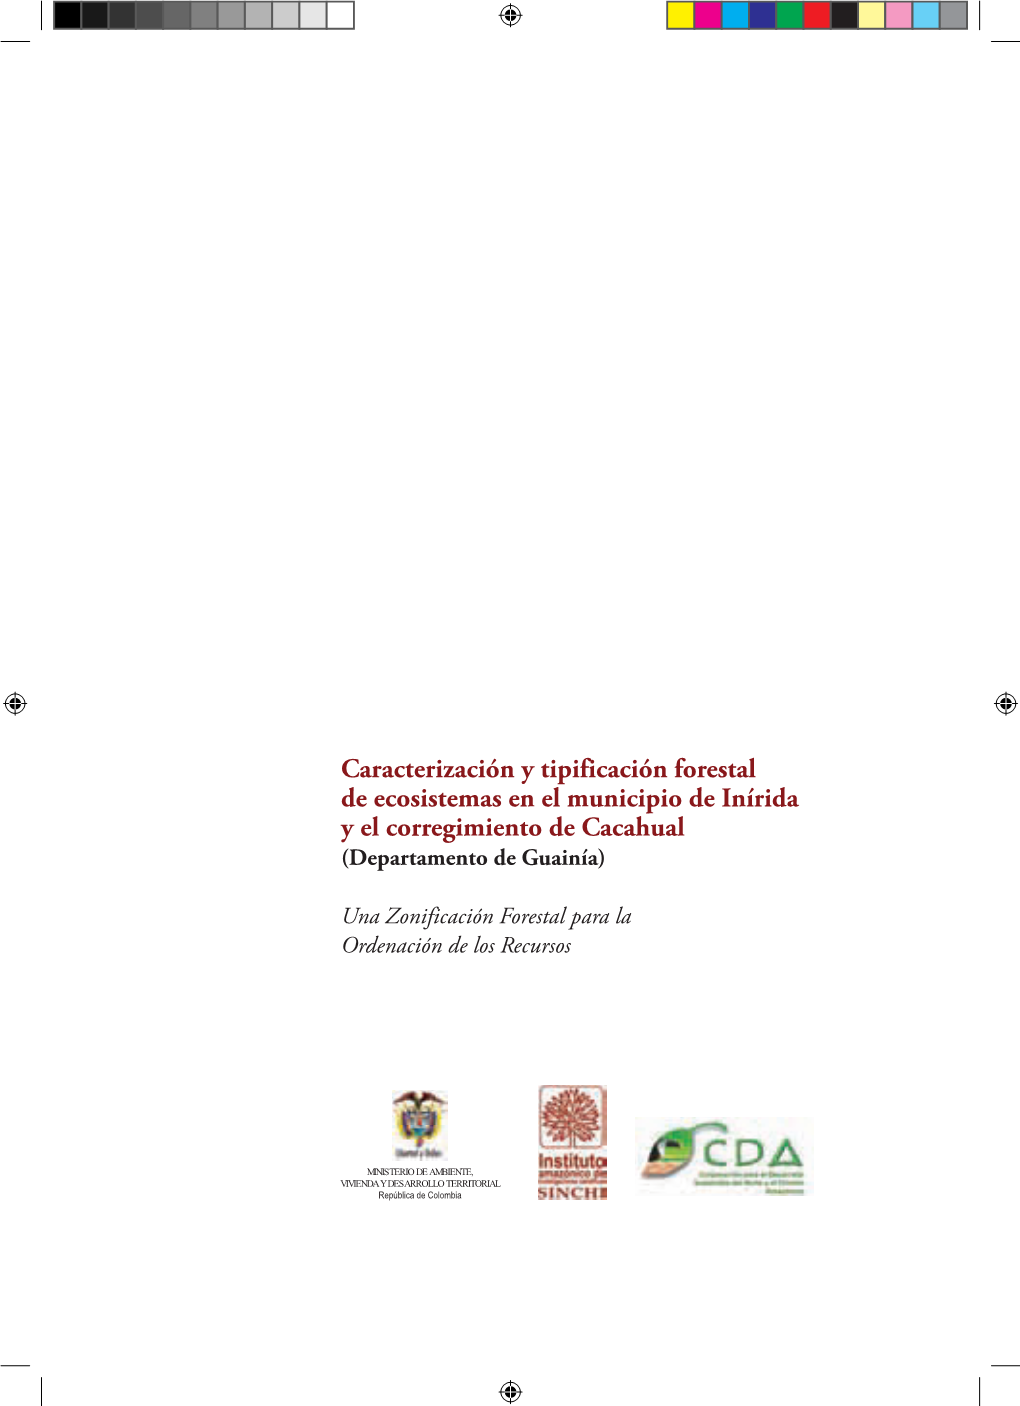 Caracterización Y Tipificación Forestal De Ecosistemas En El Municipio De Inírida Y El Corregimiento De Cacahual (Departamento De Guainía)